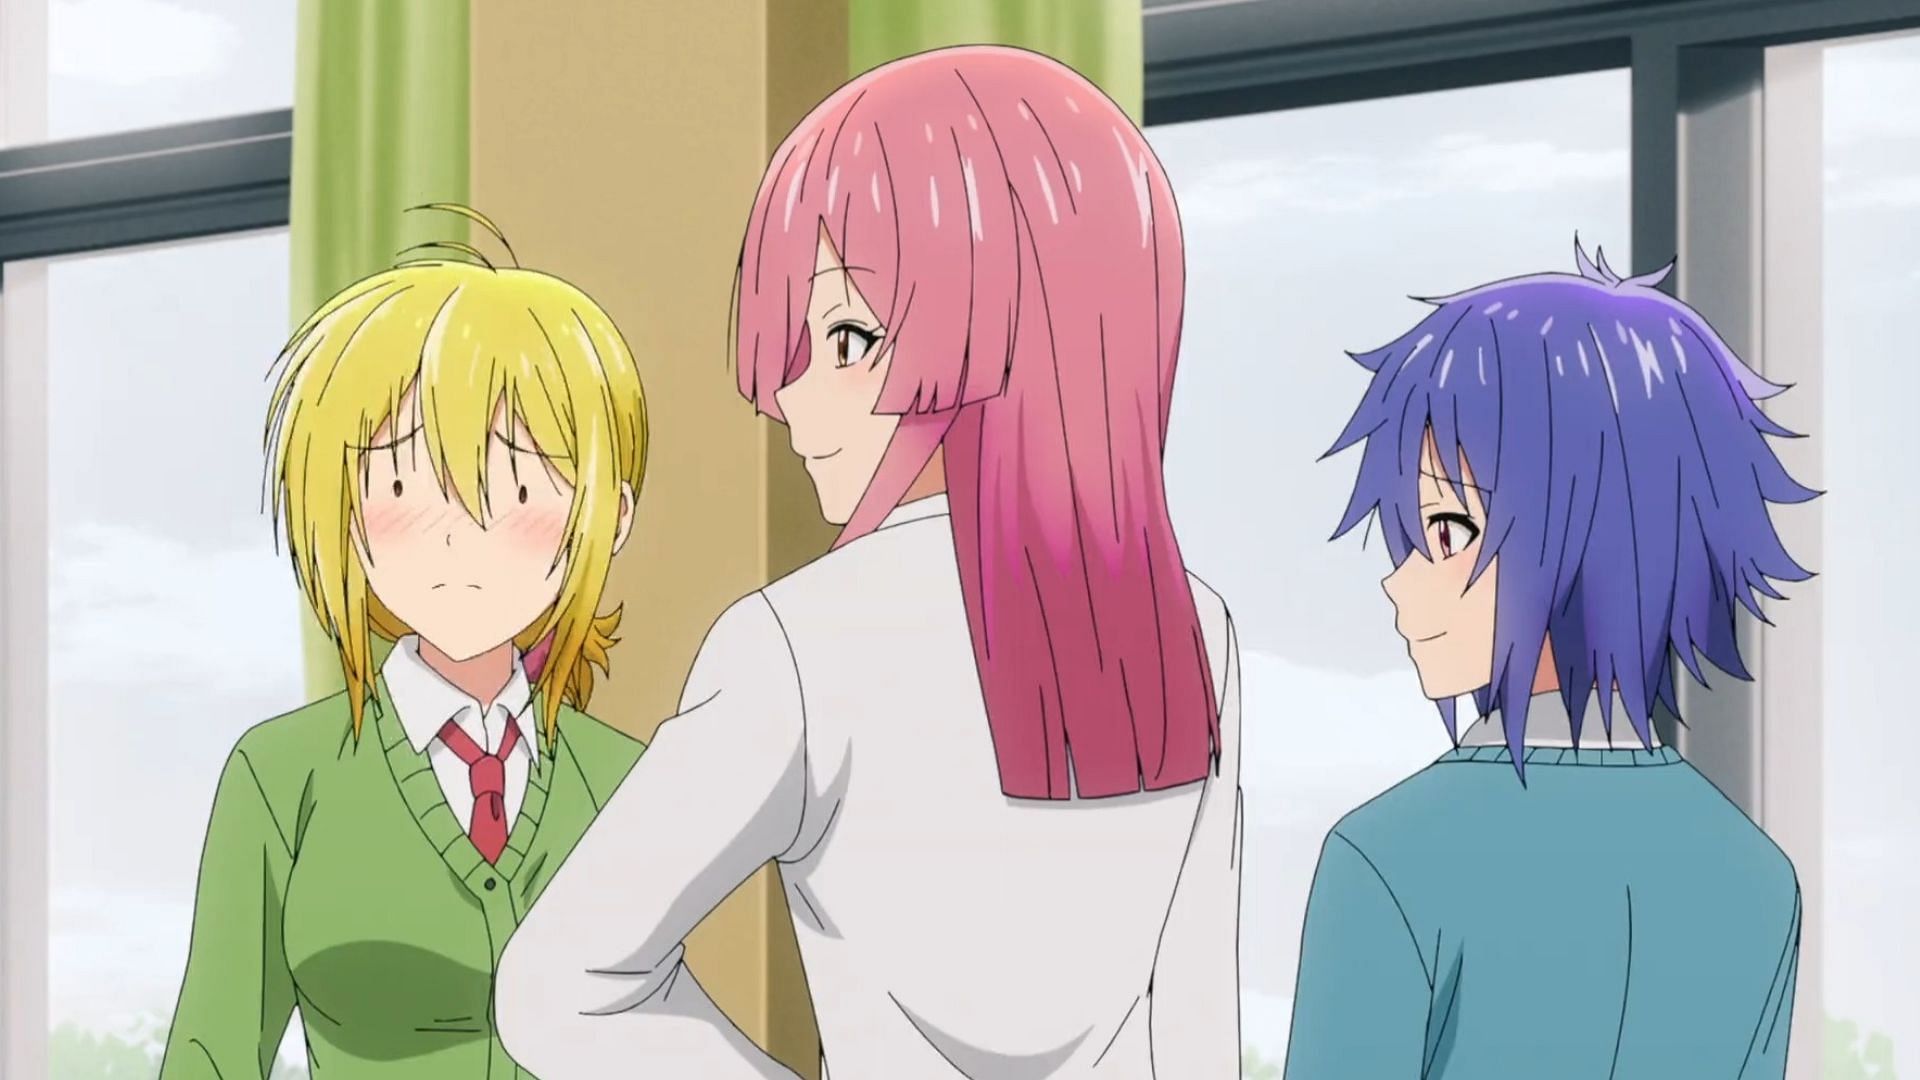 Tsukuyo, Mana, and Yuki (Image via Gekko)